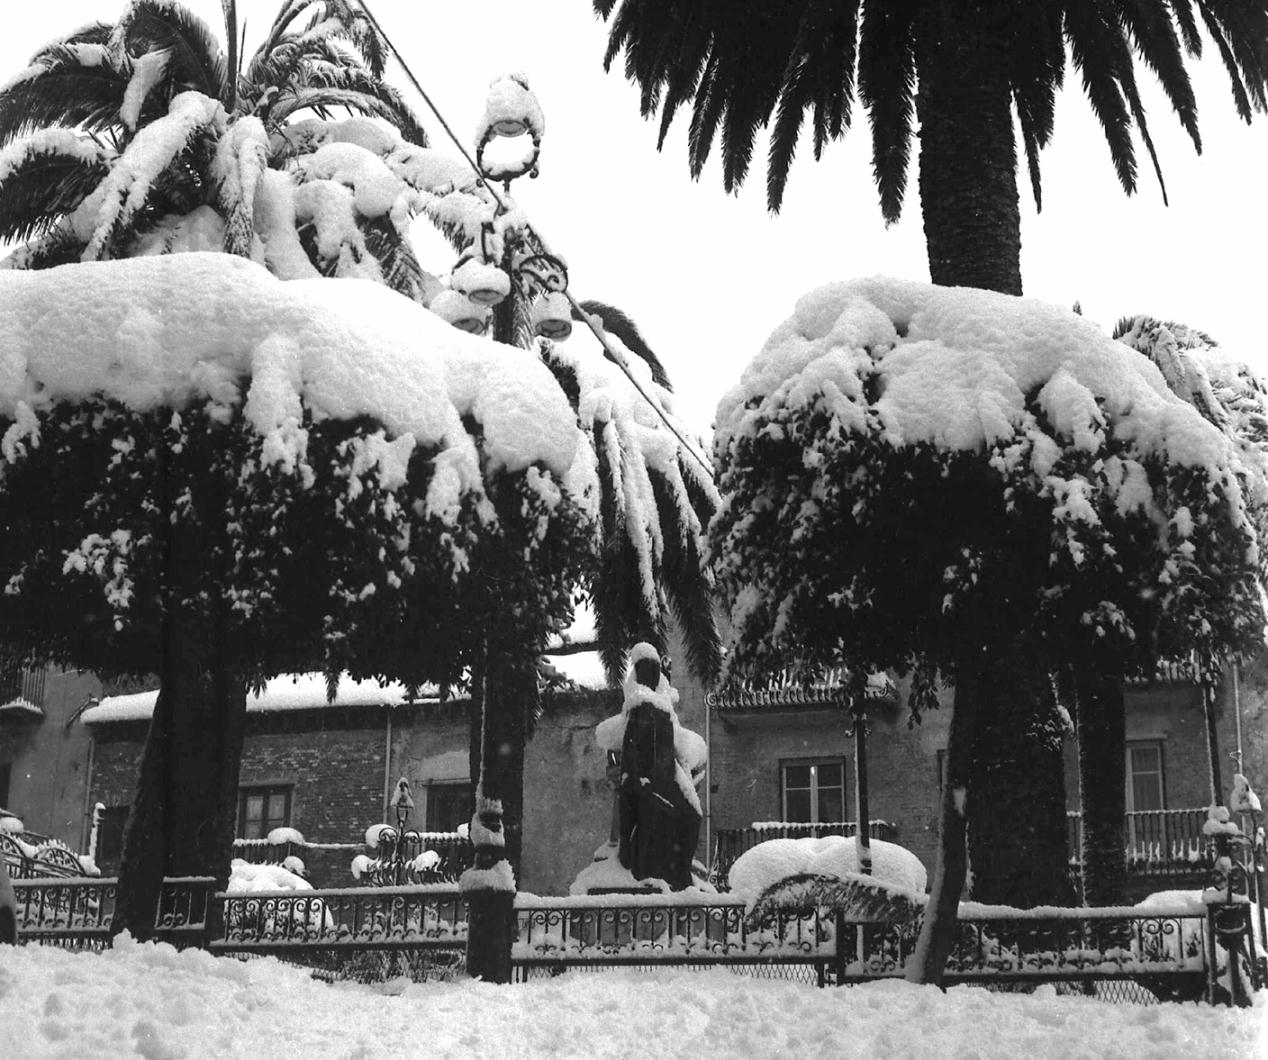 Piazza Parrcchia sotto la neve del '62